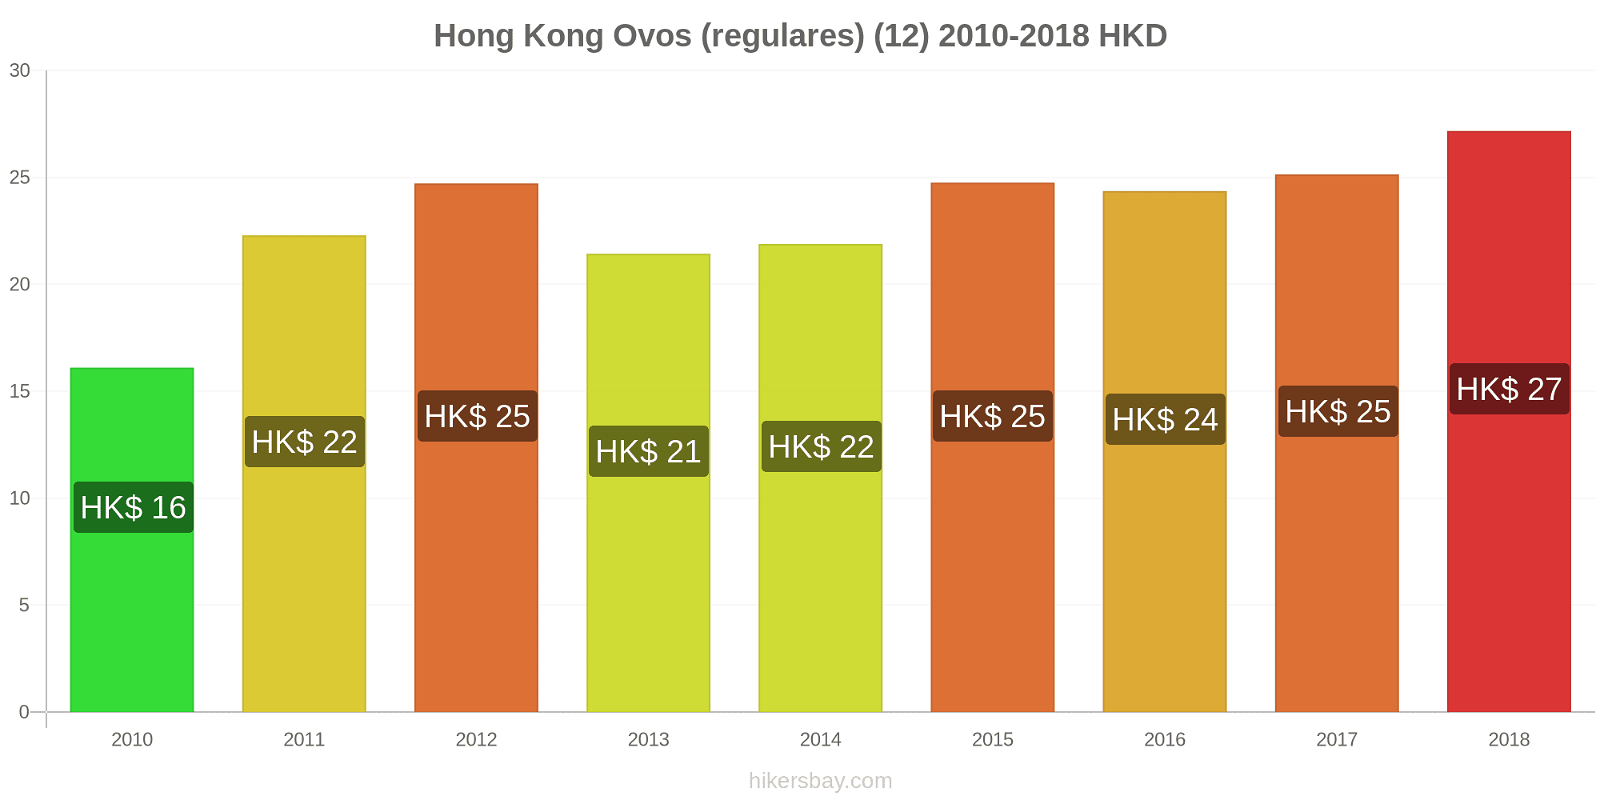 Hong Kong mudanças de preços Ovos (normais) (12 unidades) hikersbay.com